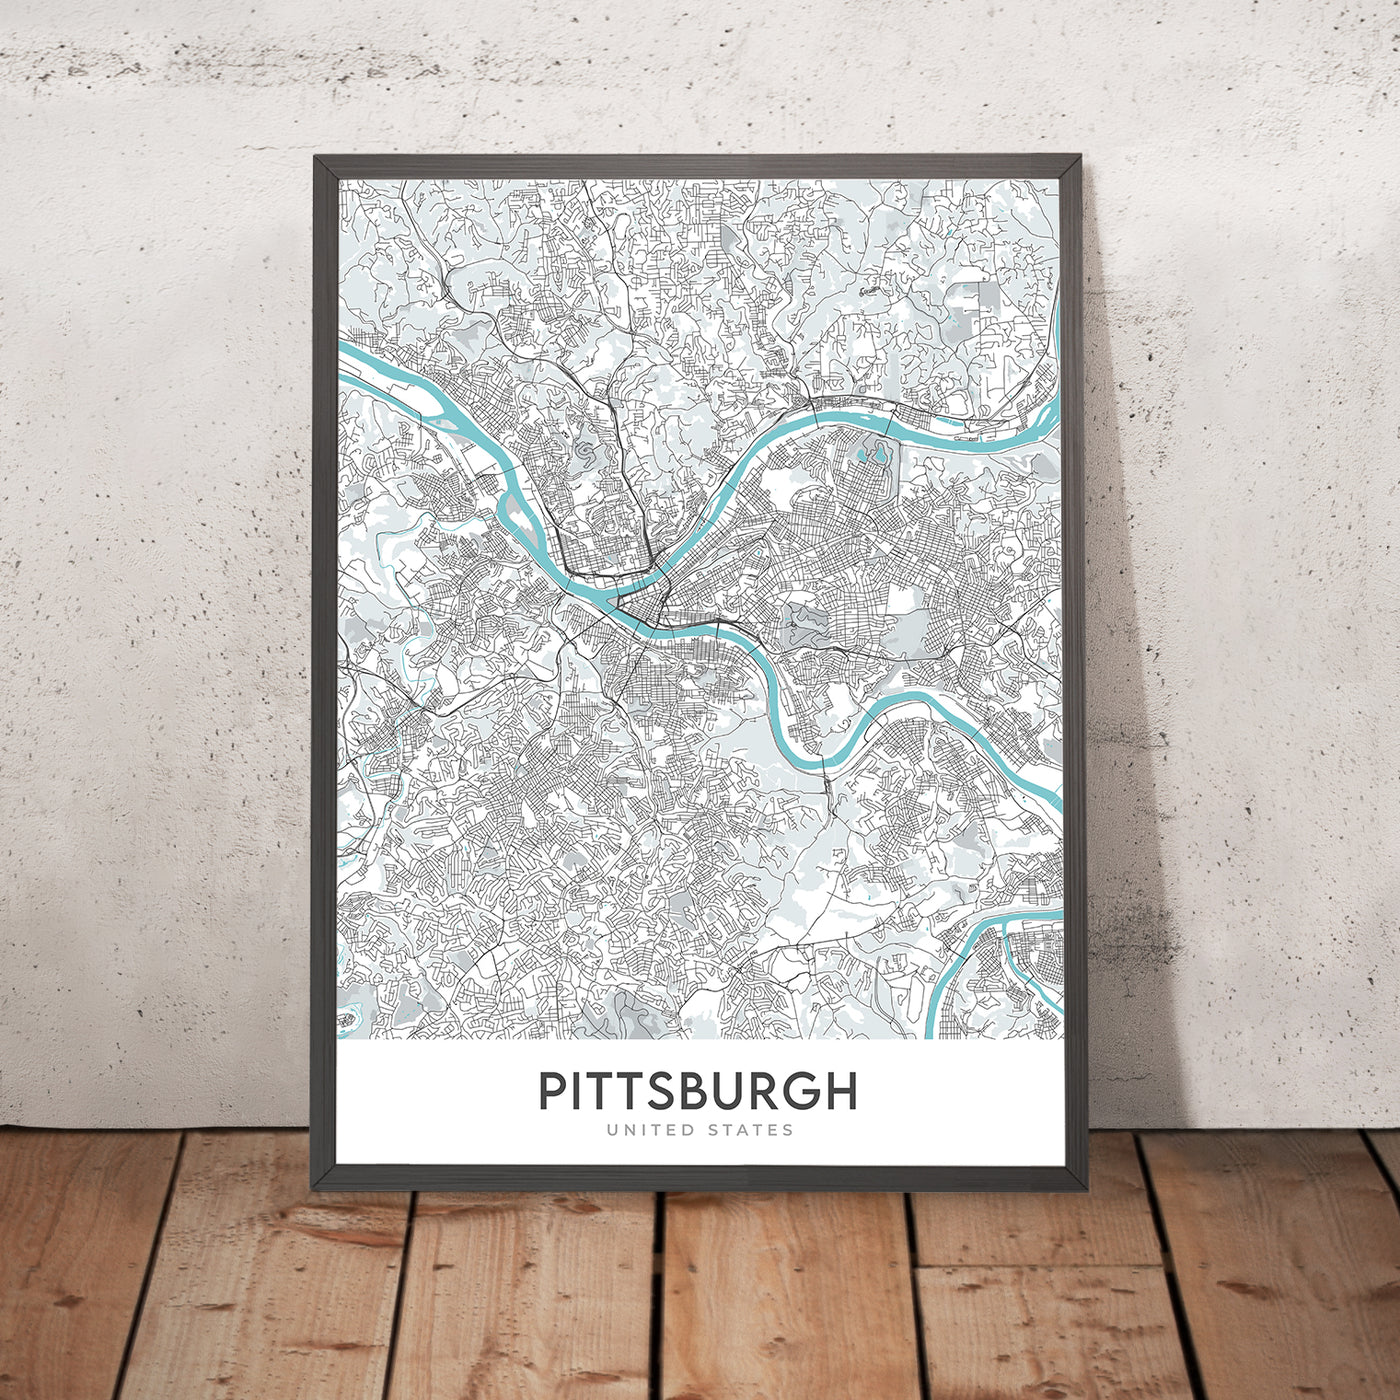 Plan de la ville moderne de Pittsburgh, Pennsylvanie : centre-ville, Oakland, PNC Park, Heinz Field, Carnegie Museum